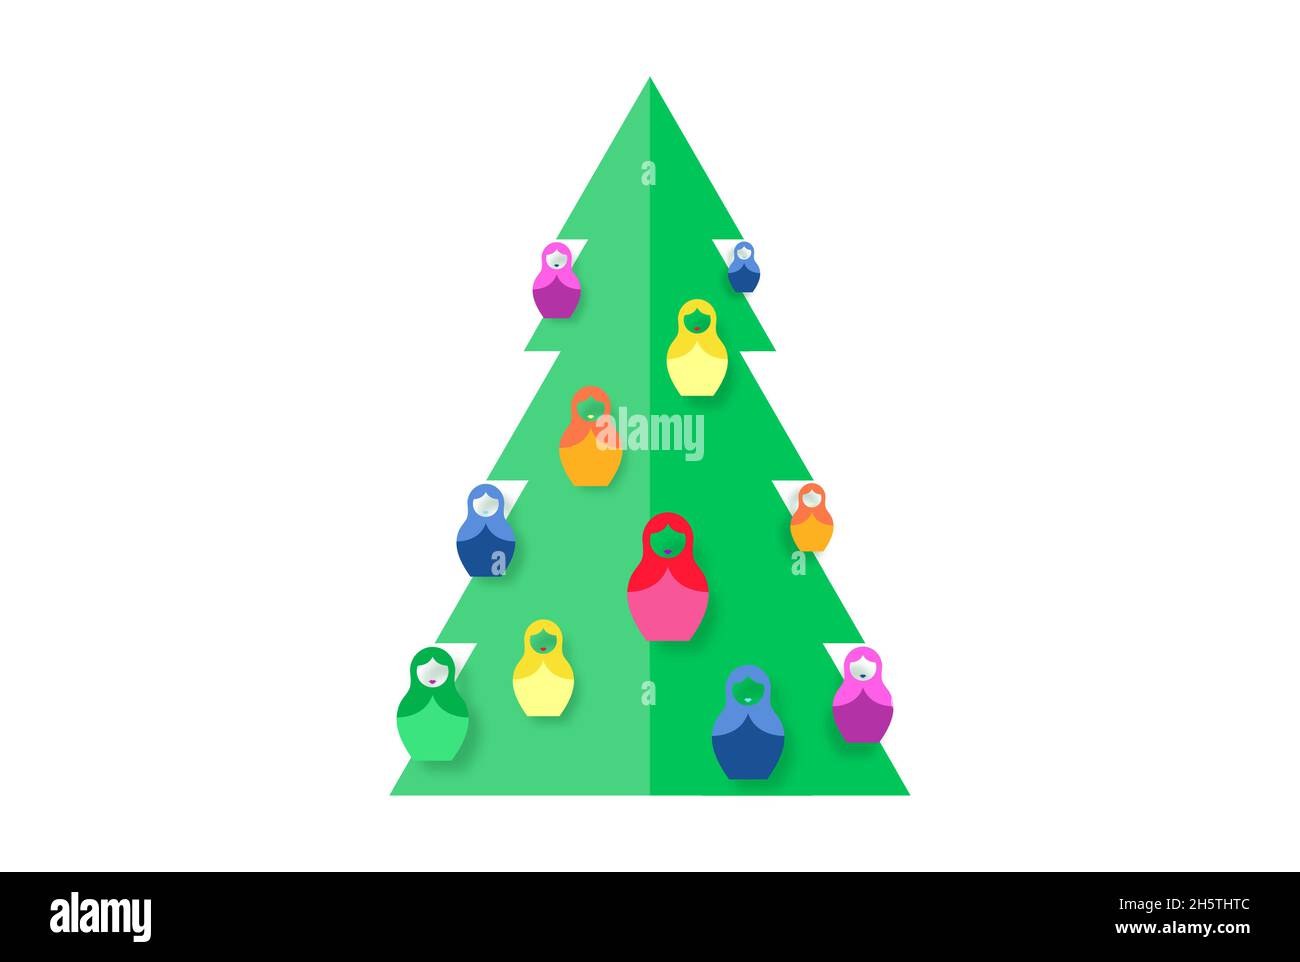 Weihnachtsbaum Papier schneiden Design mit bunten russischen Nistpuppe Matrioshka Ornamente, papercraft für Kinder spielen. Vektorgrafik Stock Vektor